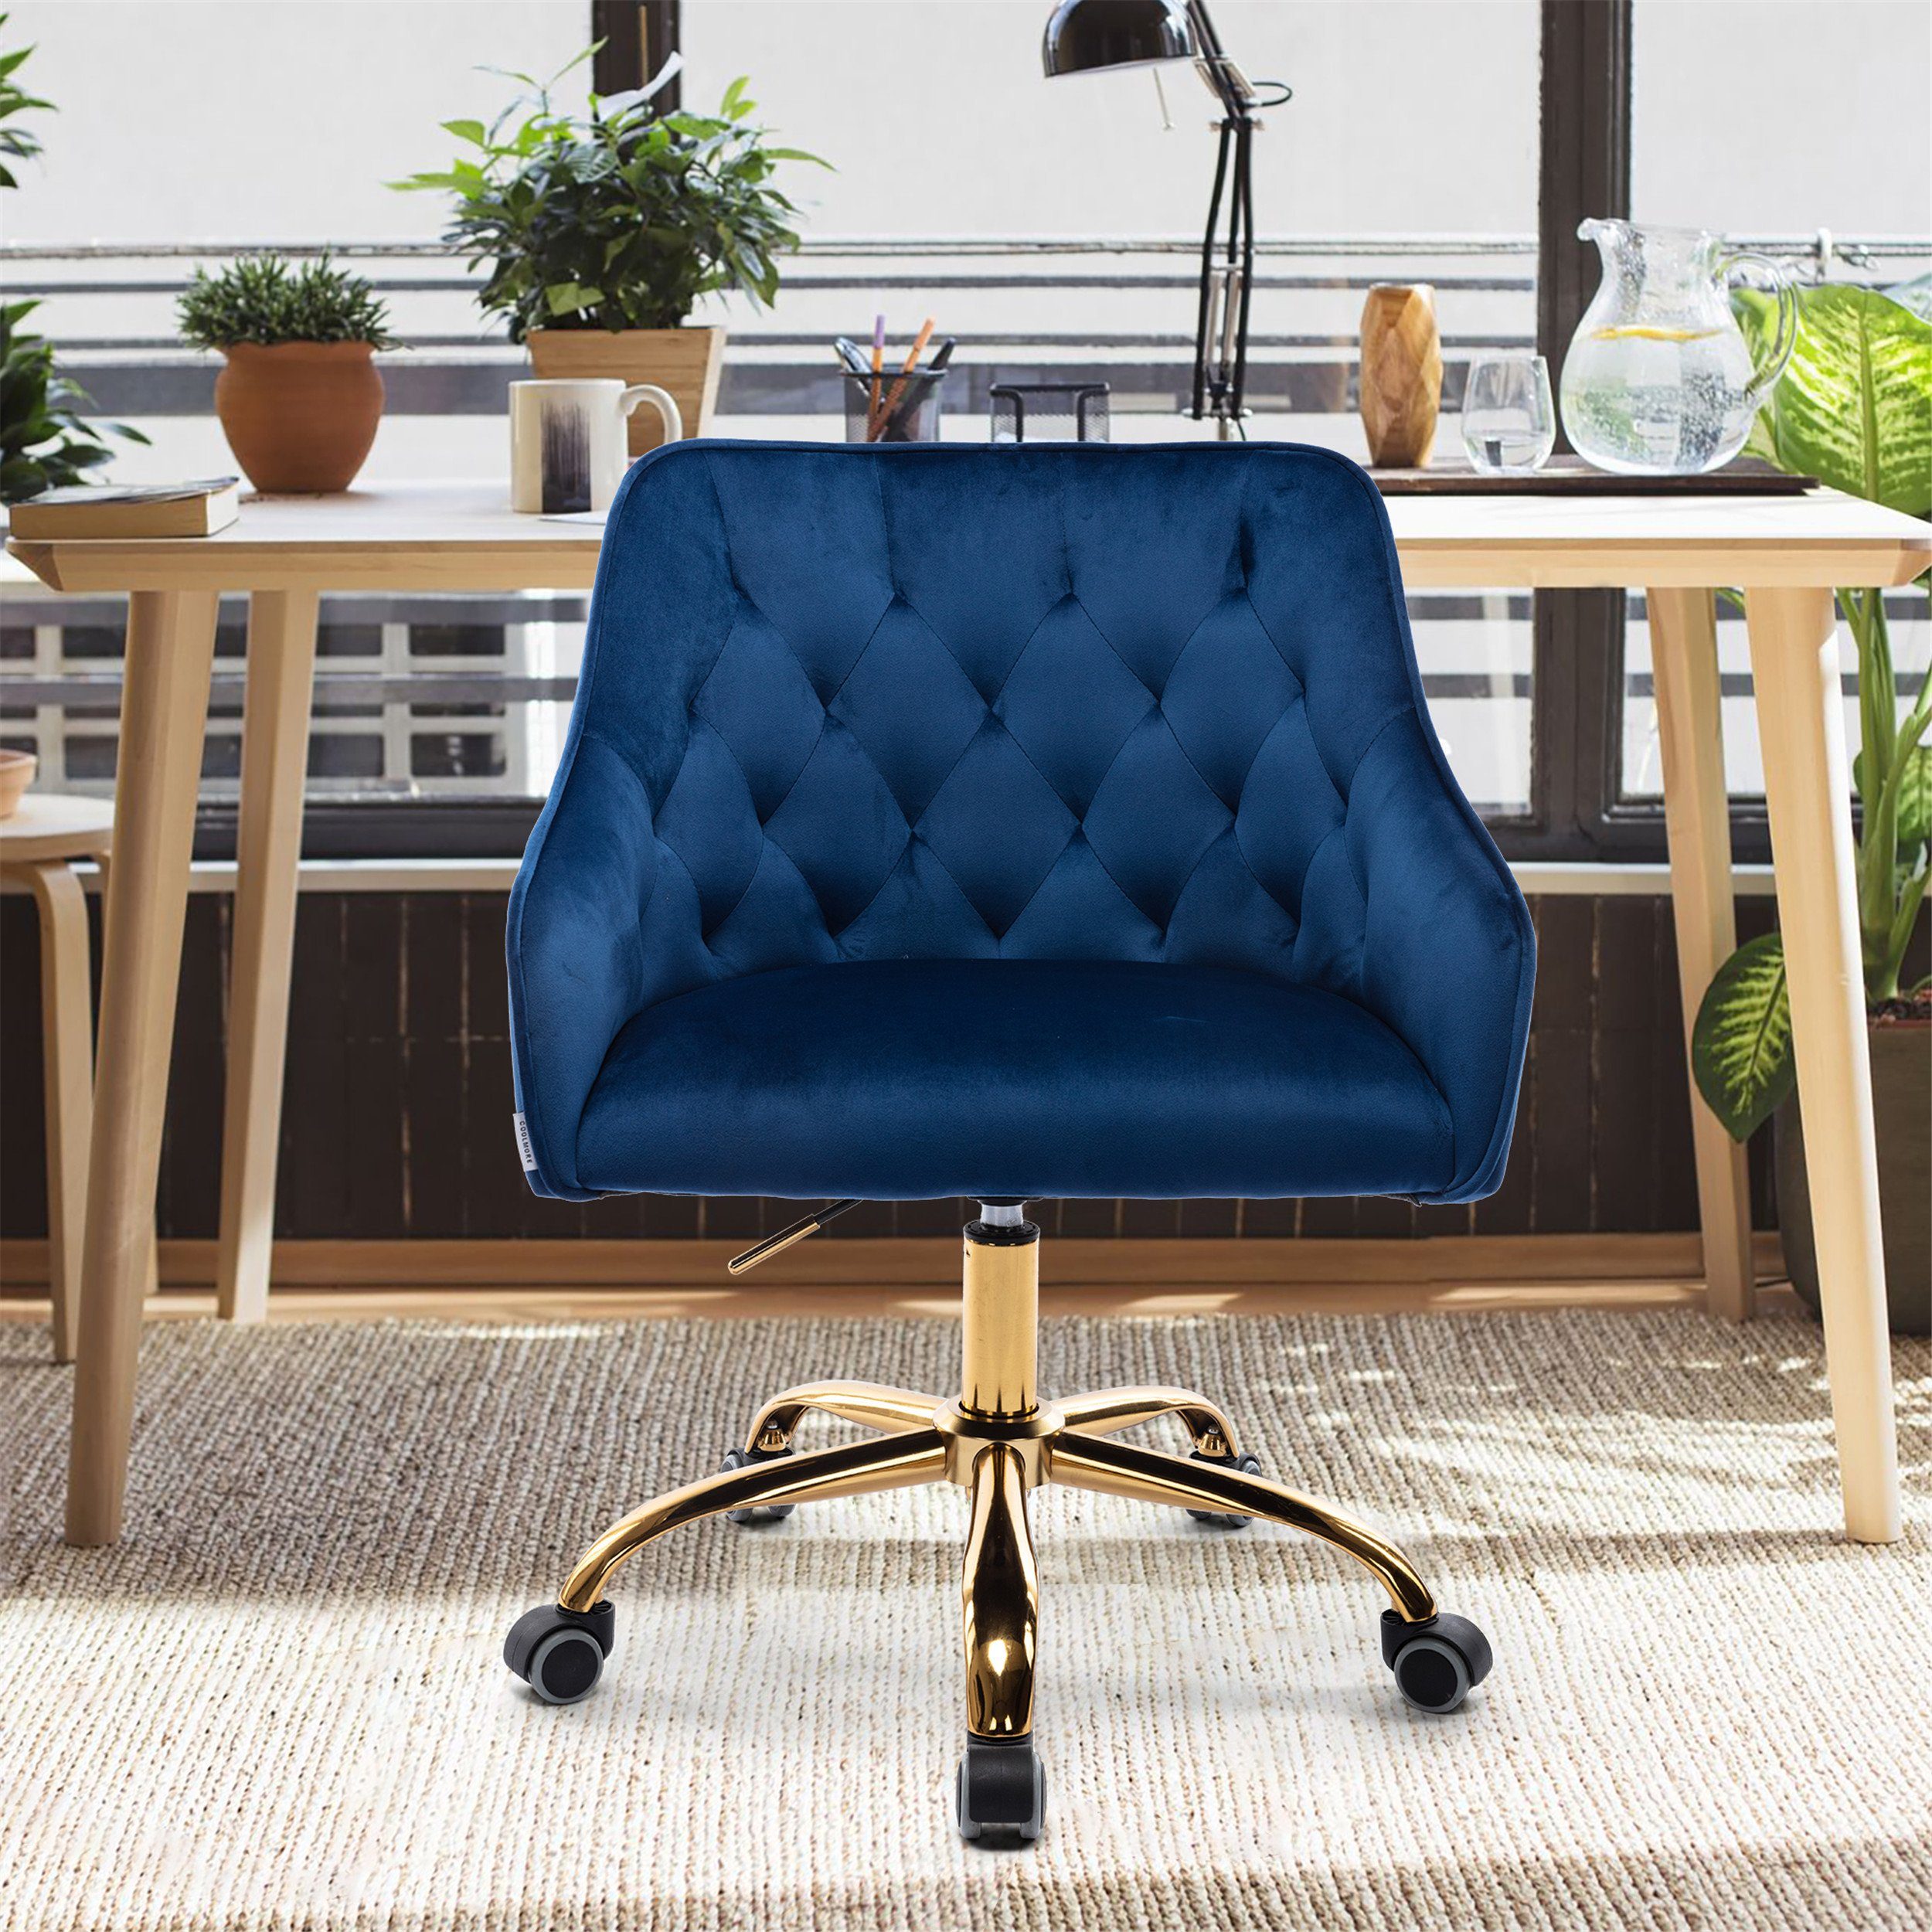 REDOM Stuhl Samt Bürostuhl, Schminkstuhl, 360° drehbar, höhenverstellbar (hübscher schicker Stuhl, goldener Bürostuhl), hübscher schicker Stuhl, goldener Bürostuhl blau